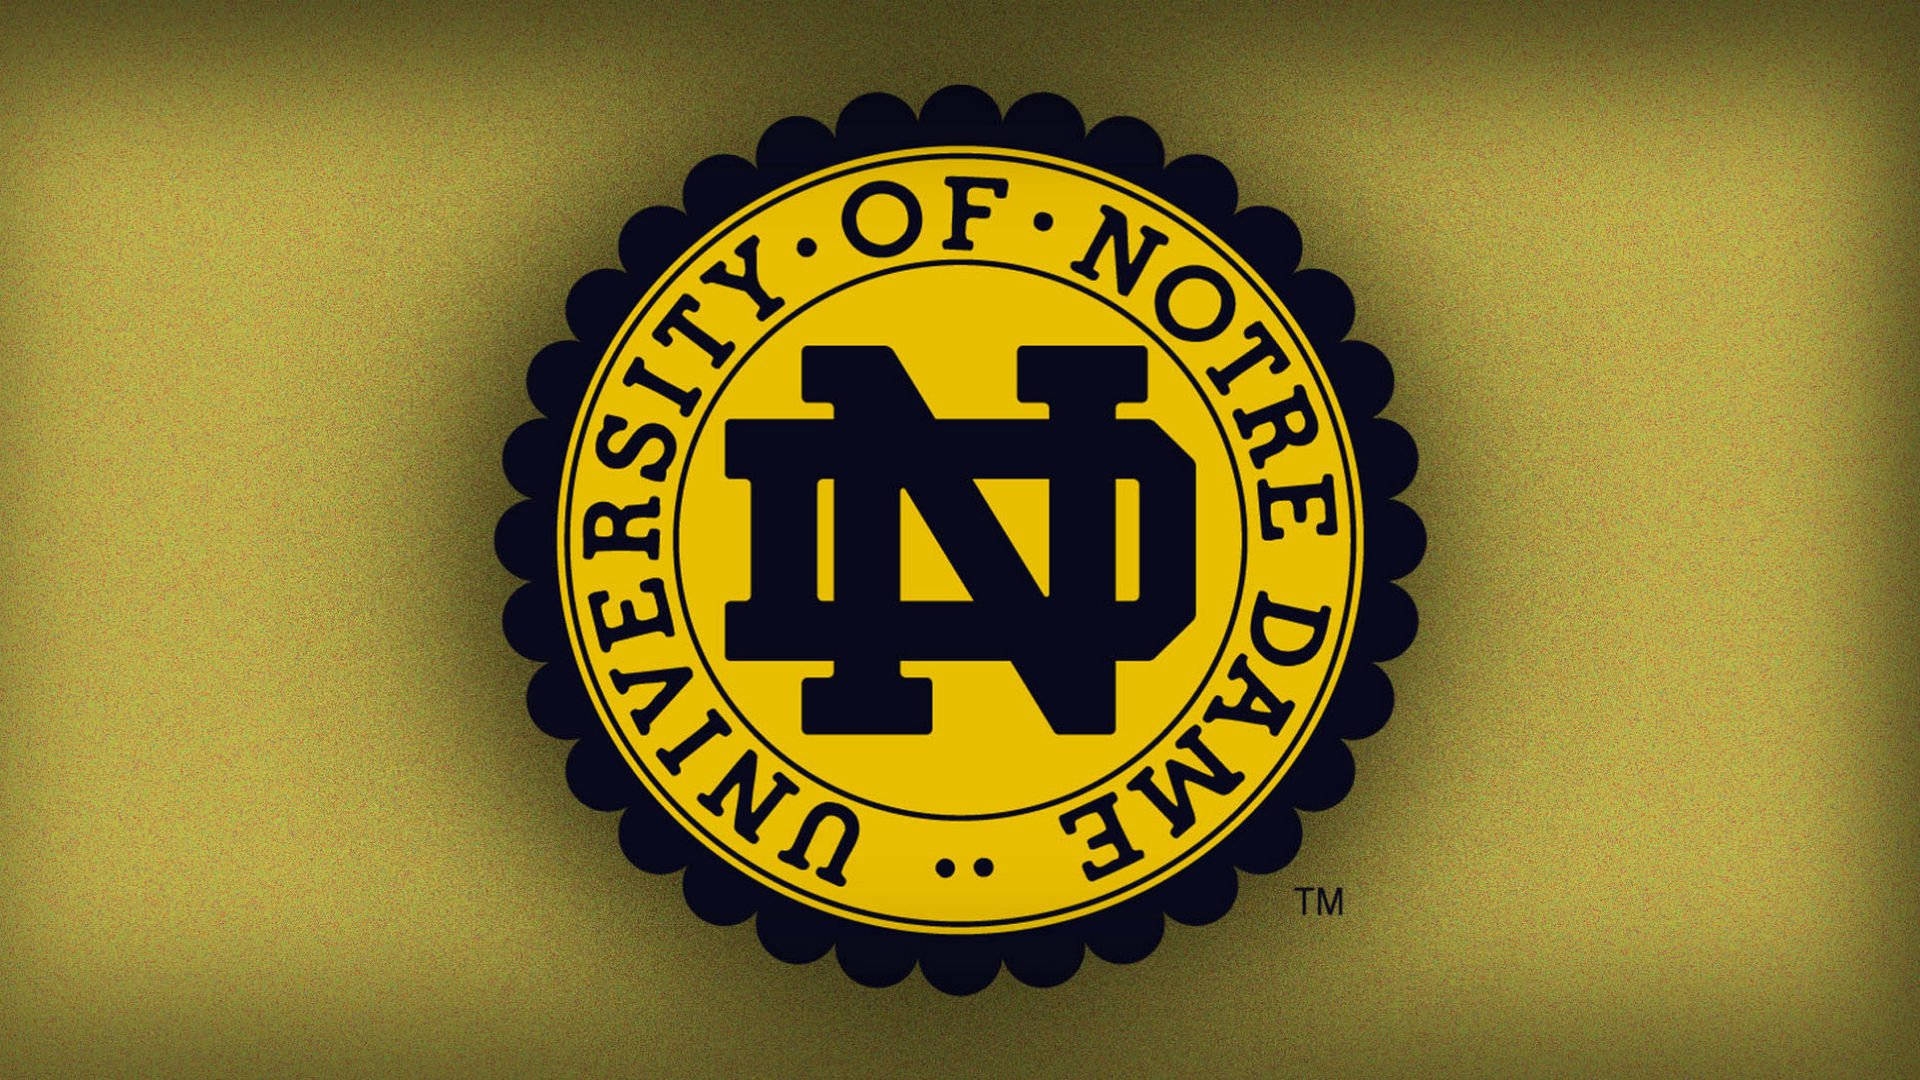 Logoet fra University of Notre Dame vises på en gul baggrund. Wallpaper